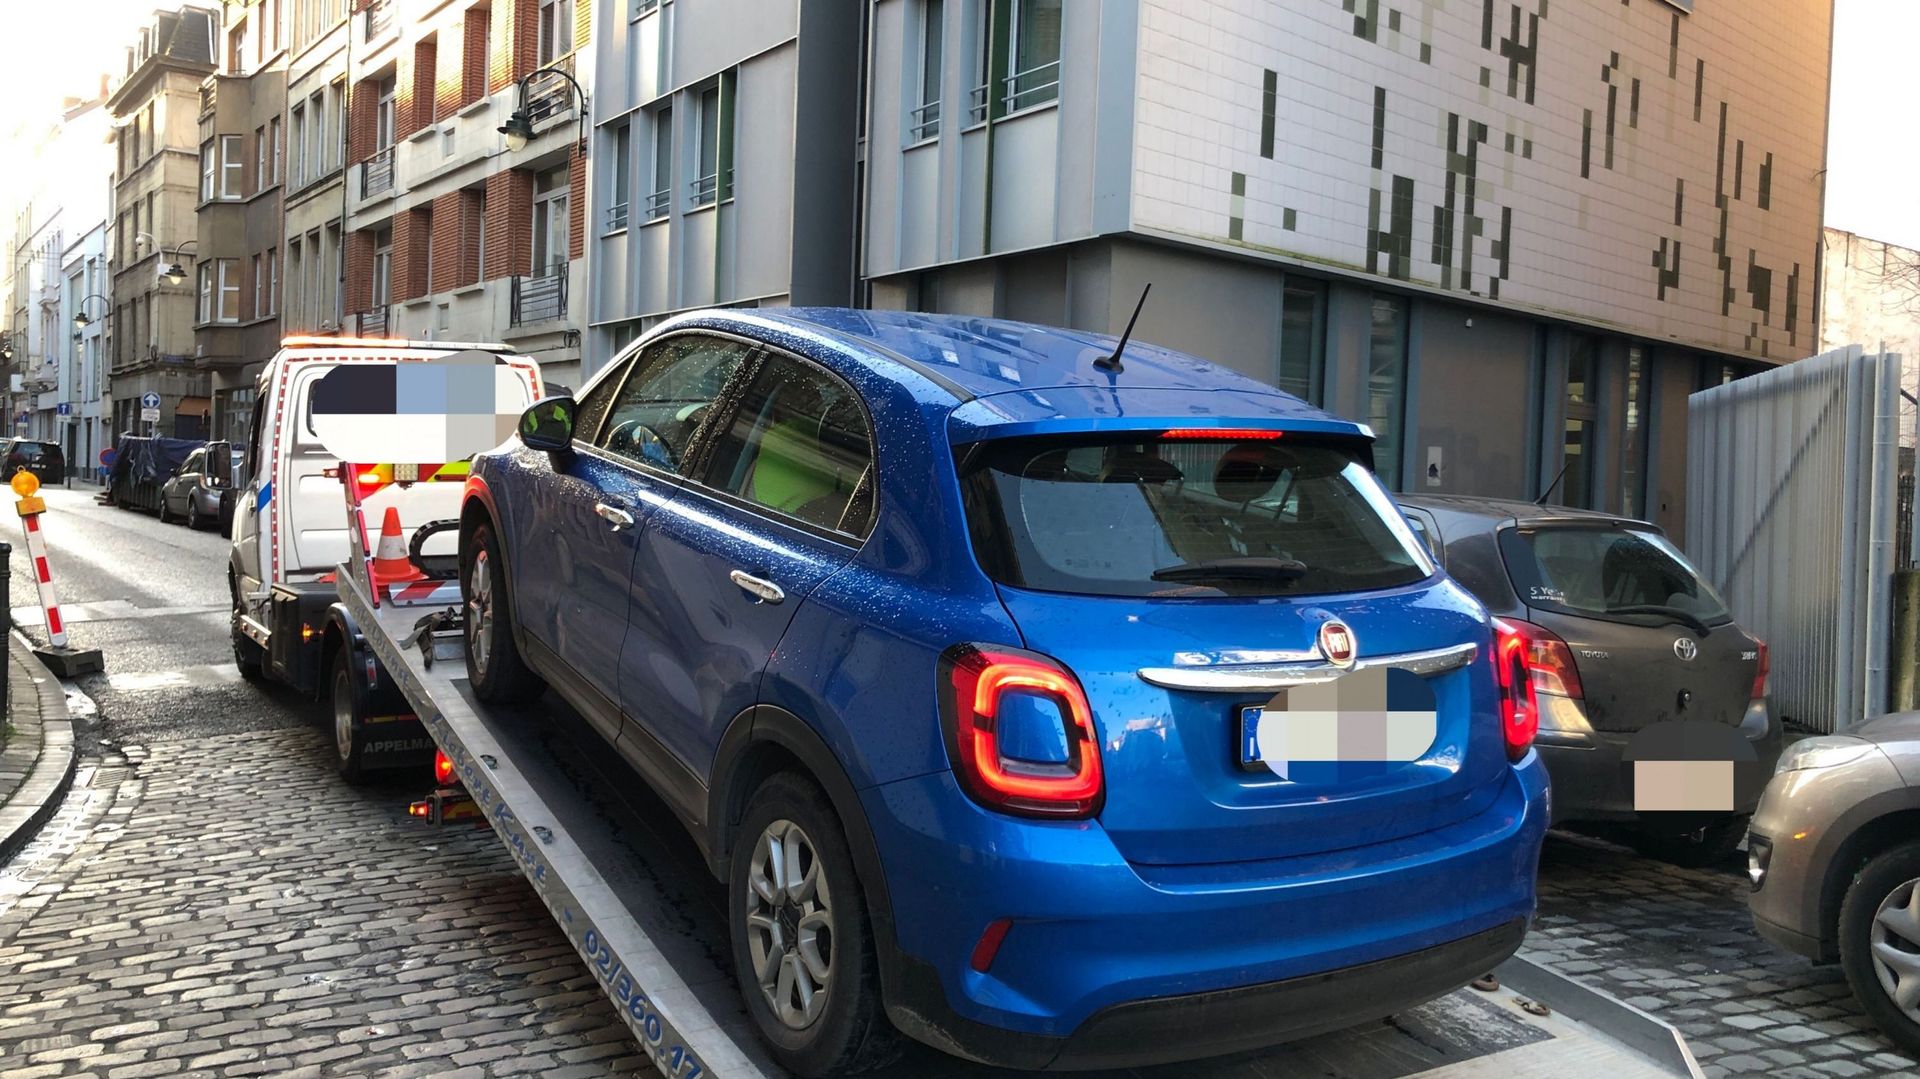 Un véhicule, muni d’une plaque minéralogique italienne, emmené sur demande de la police.